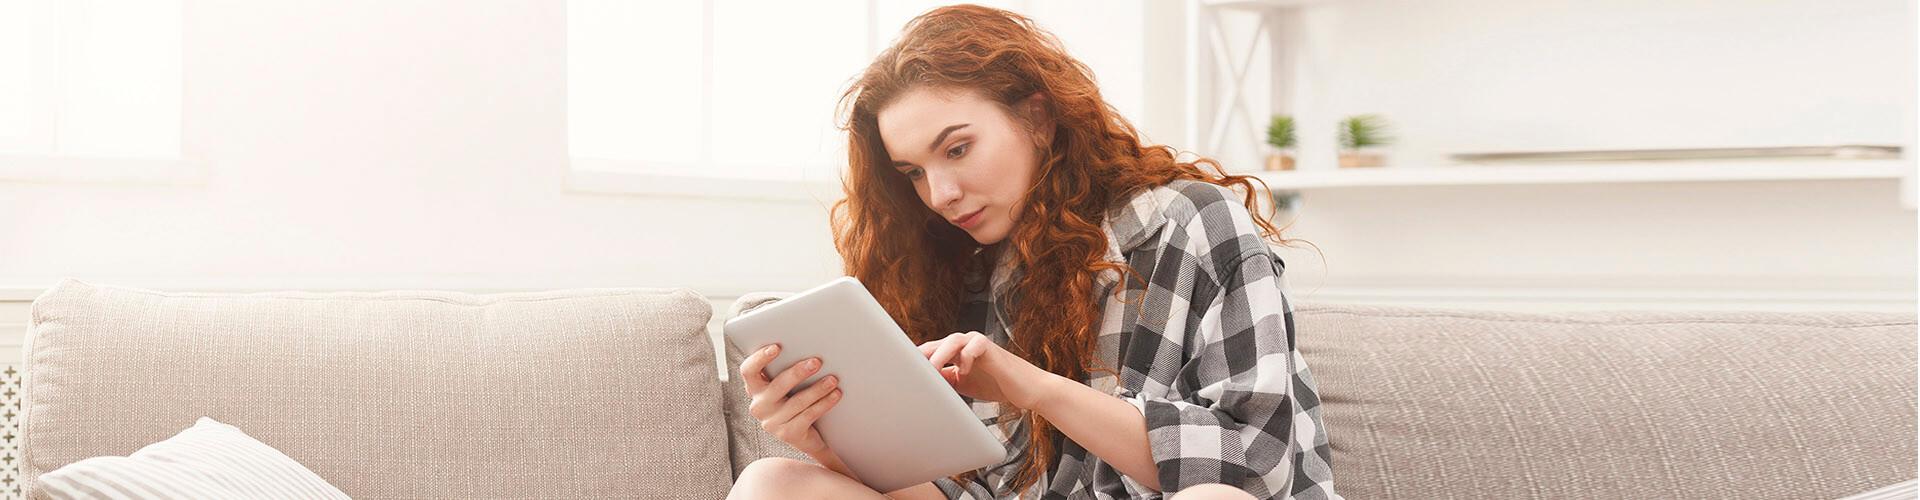 Cuenta de Pago Básica - Chica joven con una camisa de cuadros sentada en el sofá de su casa con una tablet buscando cuentas